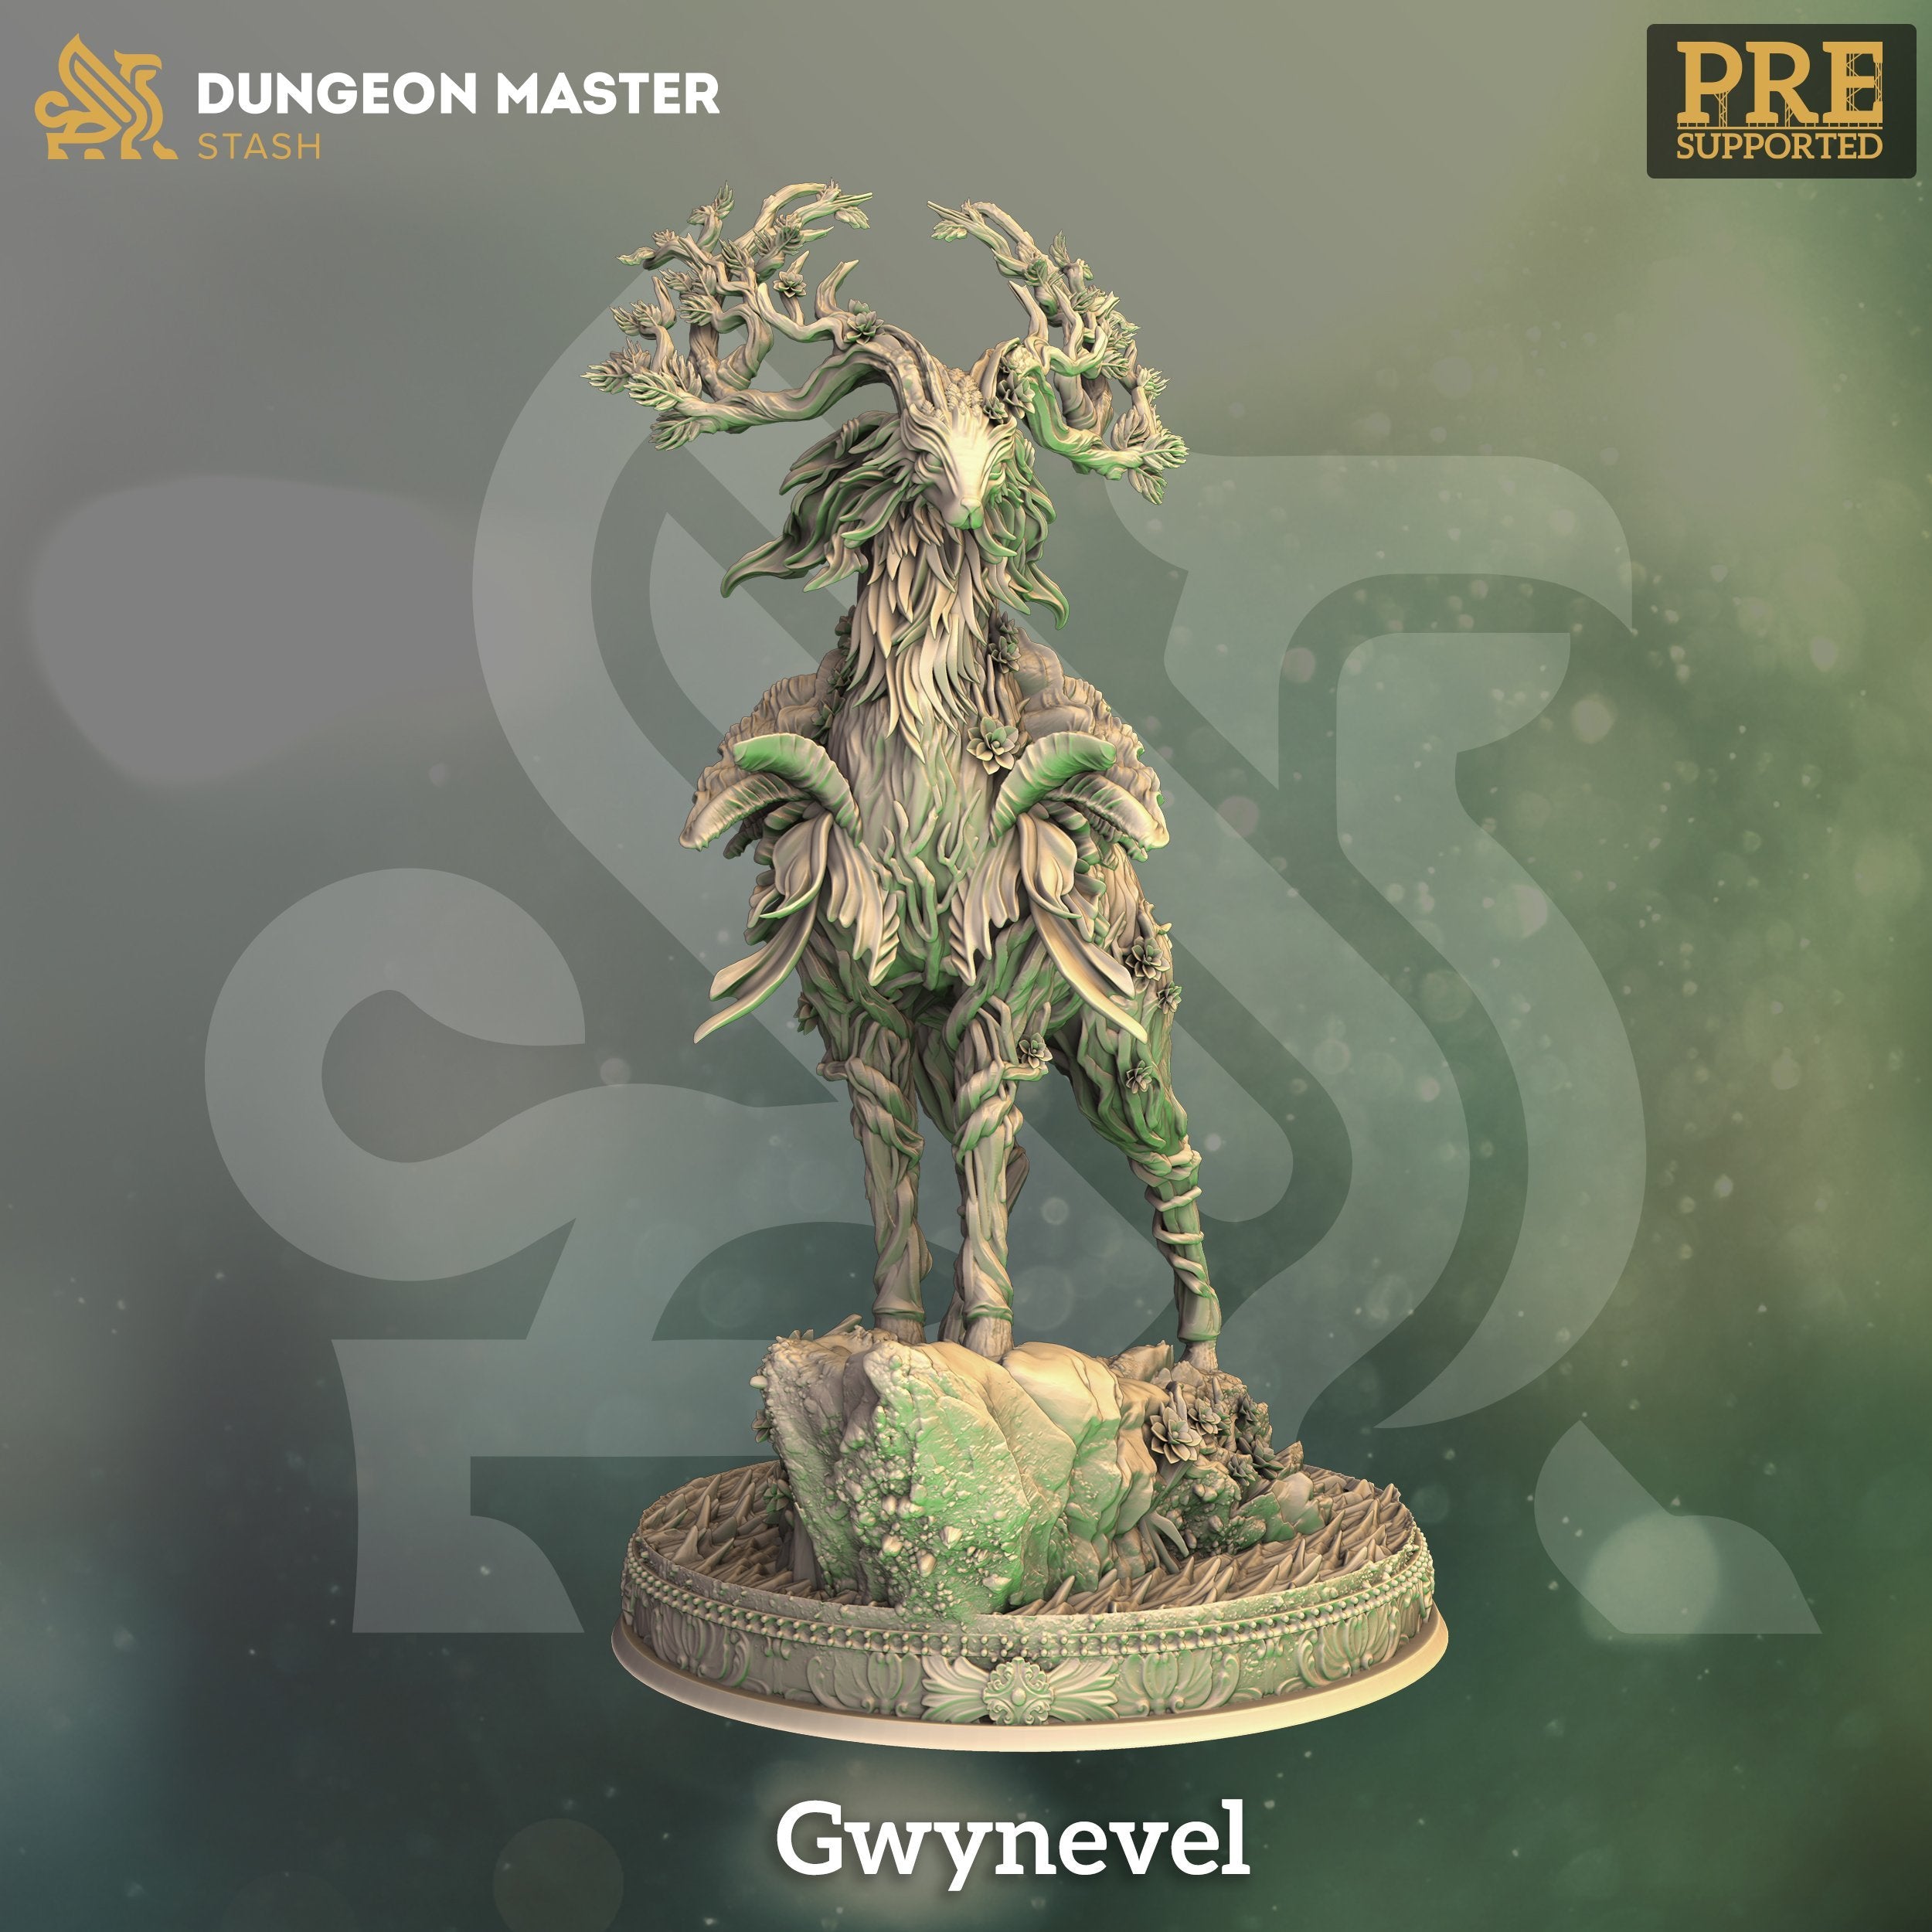 Gwynevel - The Printable Dragon